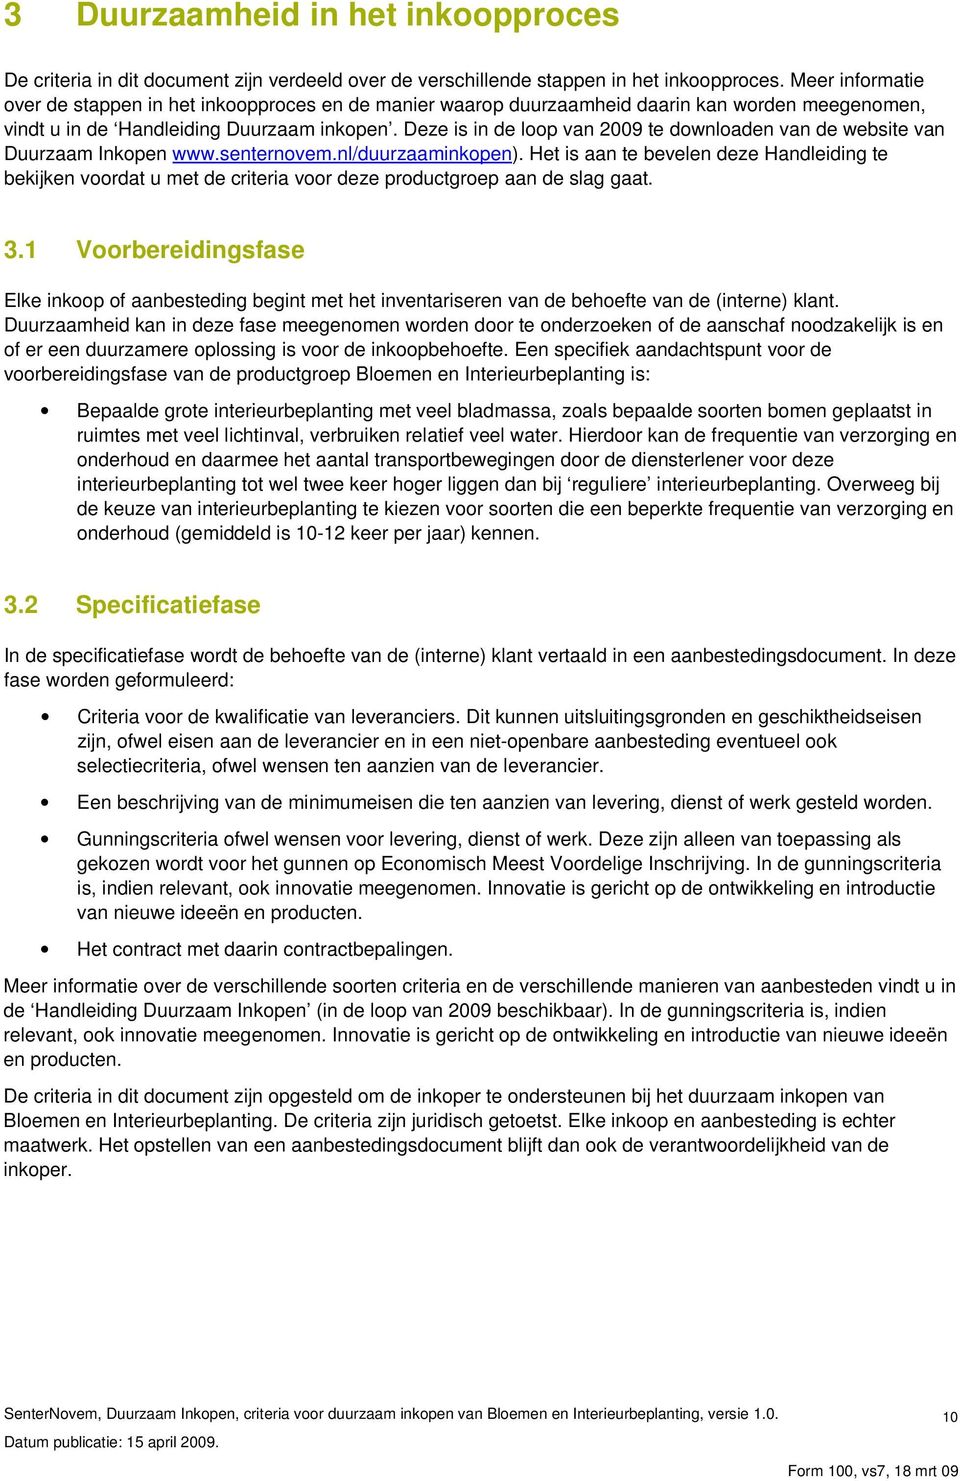 Deze is in de loop van 2009 te downloaden van de website van Duurzaam Inkopen www.senternovem.nl/duurzaaminkopen).